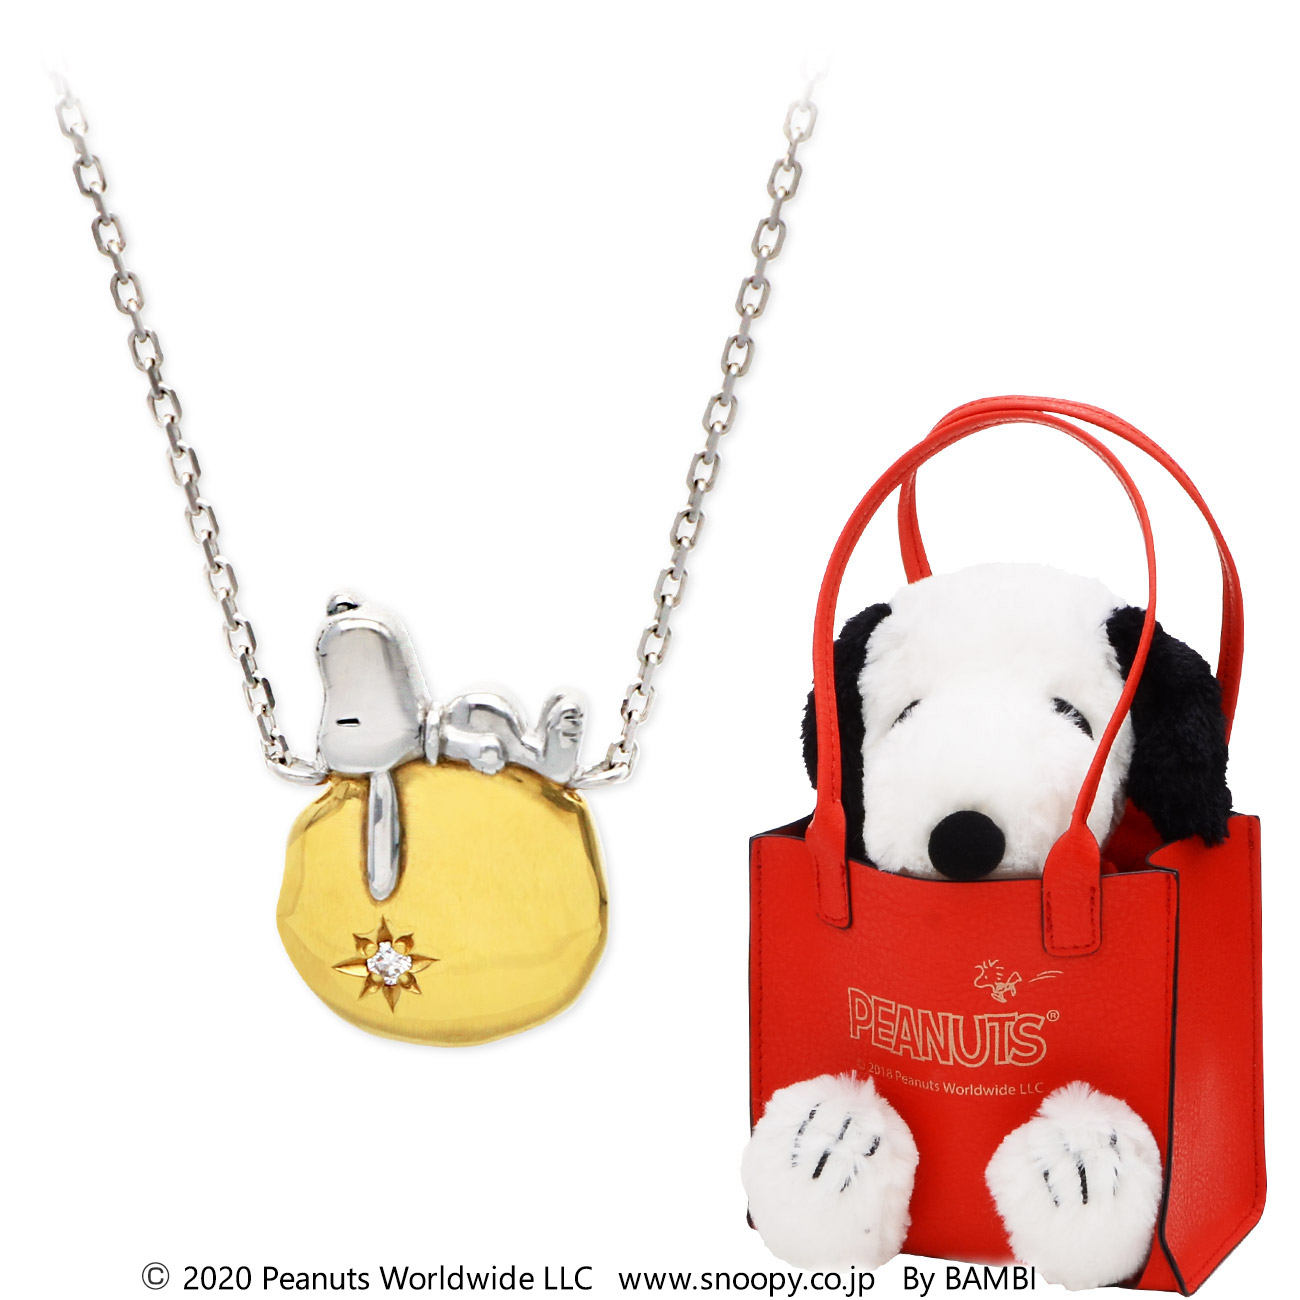 スヌーピー Snoopy シルバーネックレス 喜ばれる誕生日プレゼント 母の日ギフト 日本全国お取り寄せ